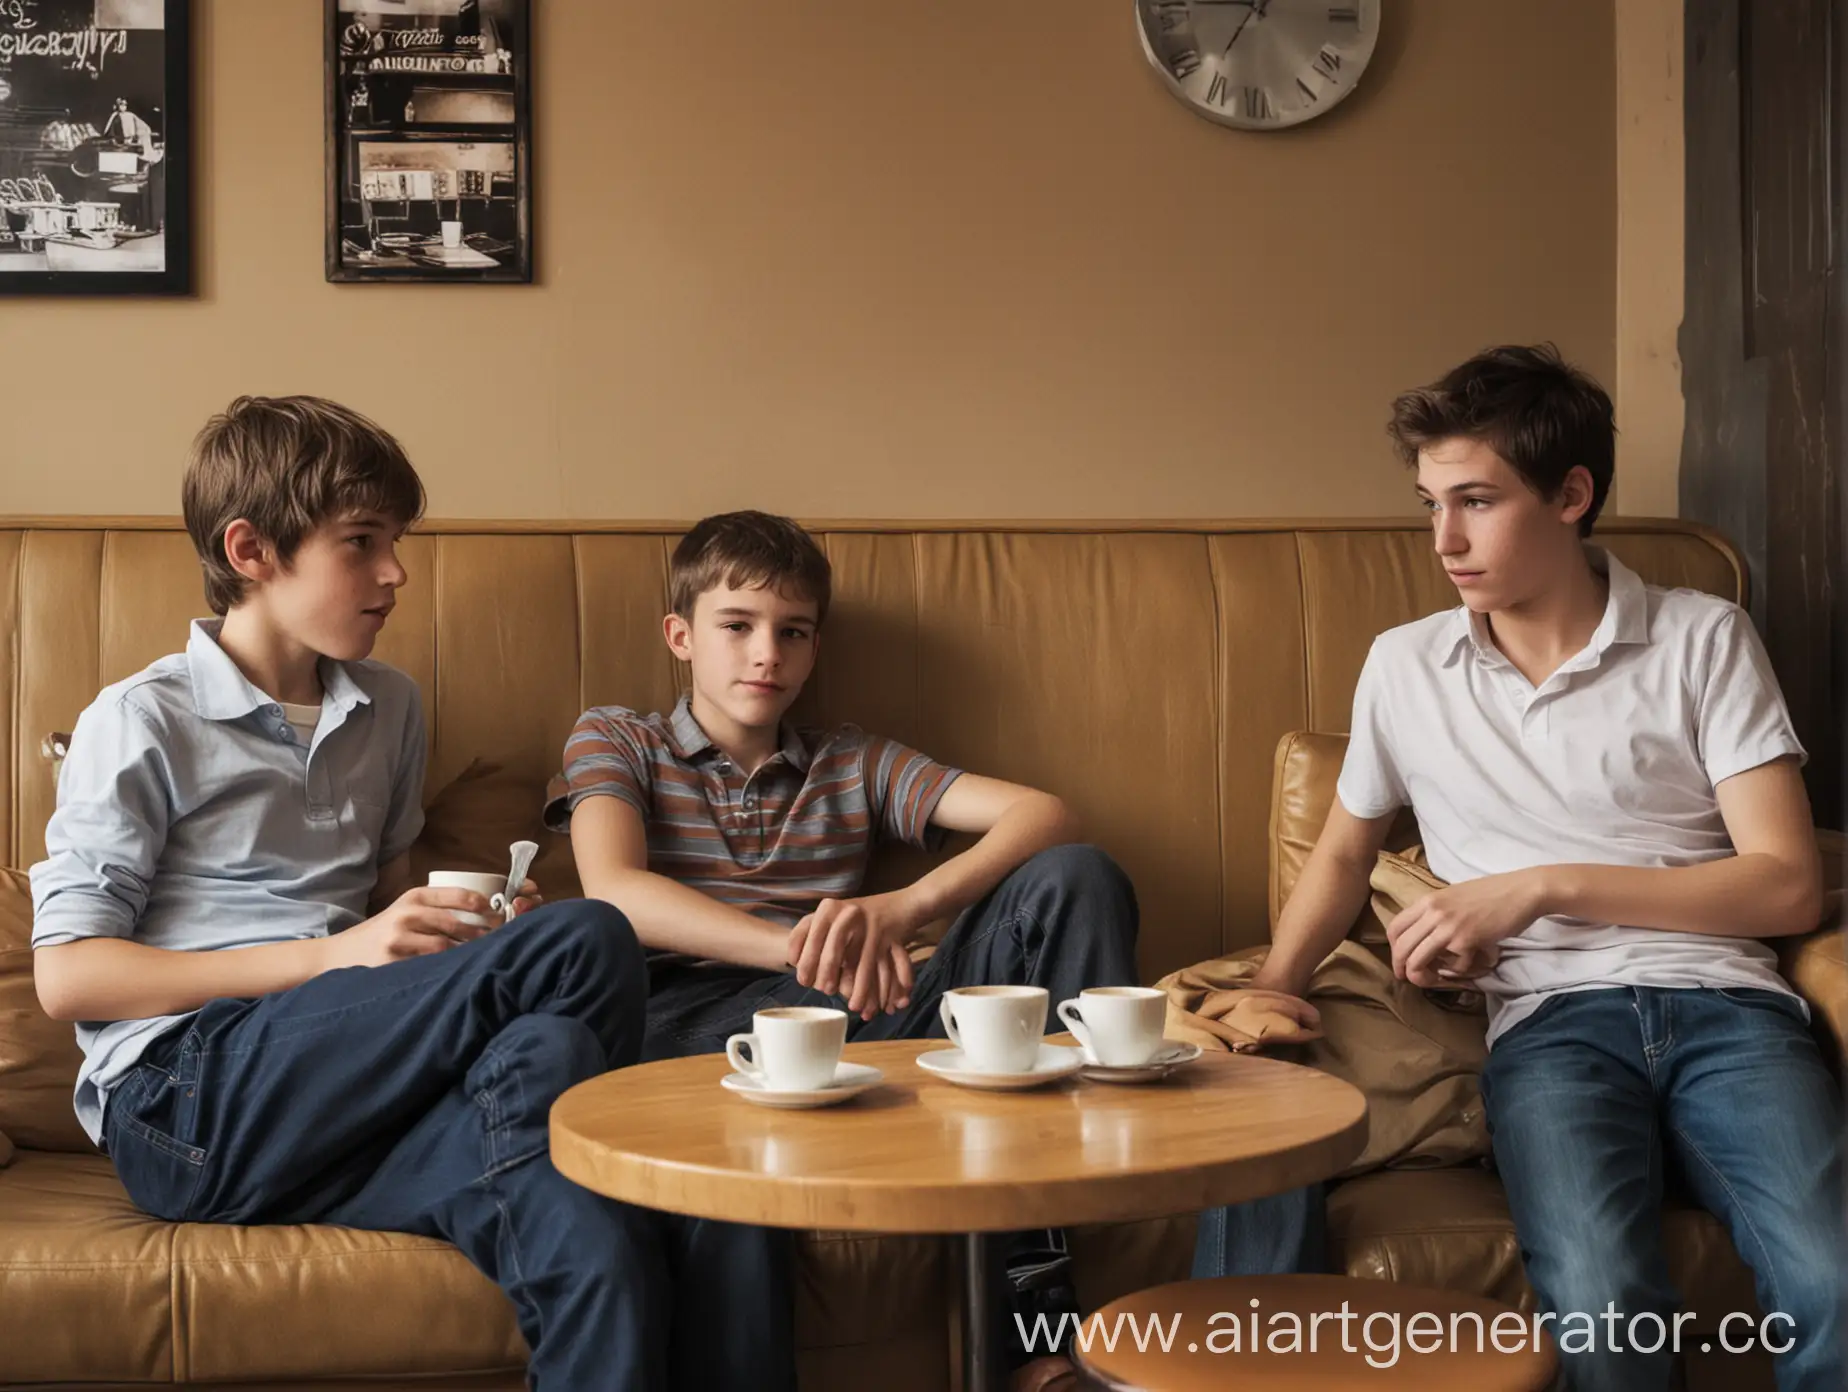 В кафе, на диване сидят три мальчика-подростка  лет, а напротив них 2 мужчины.